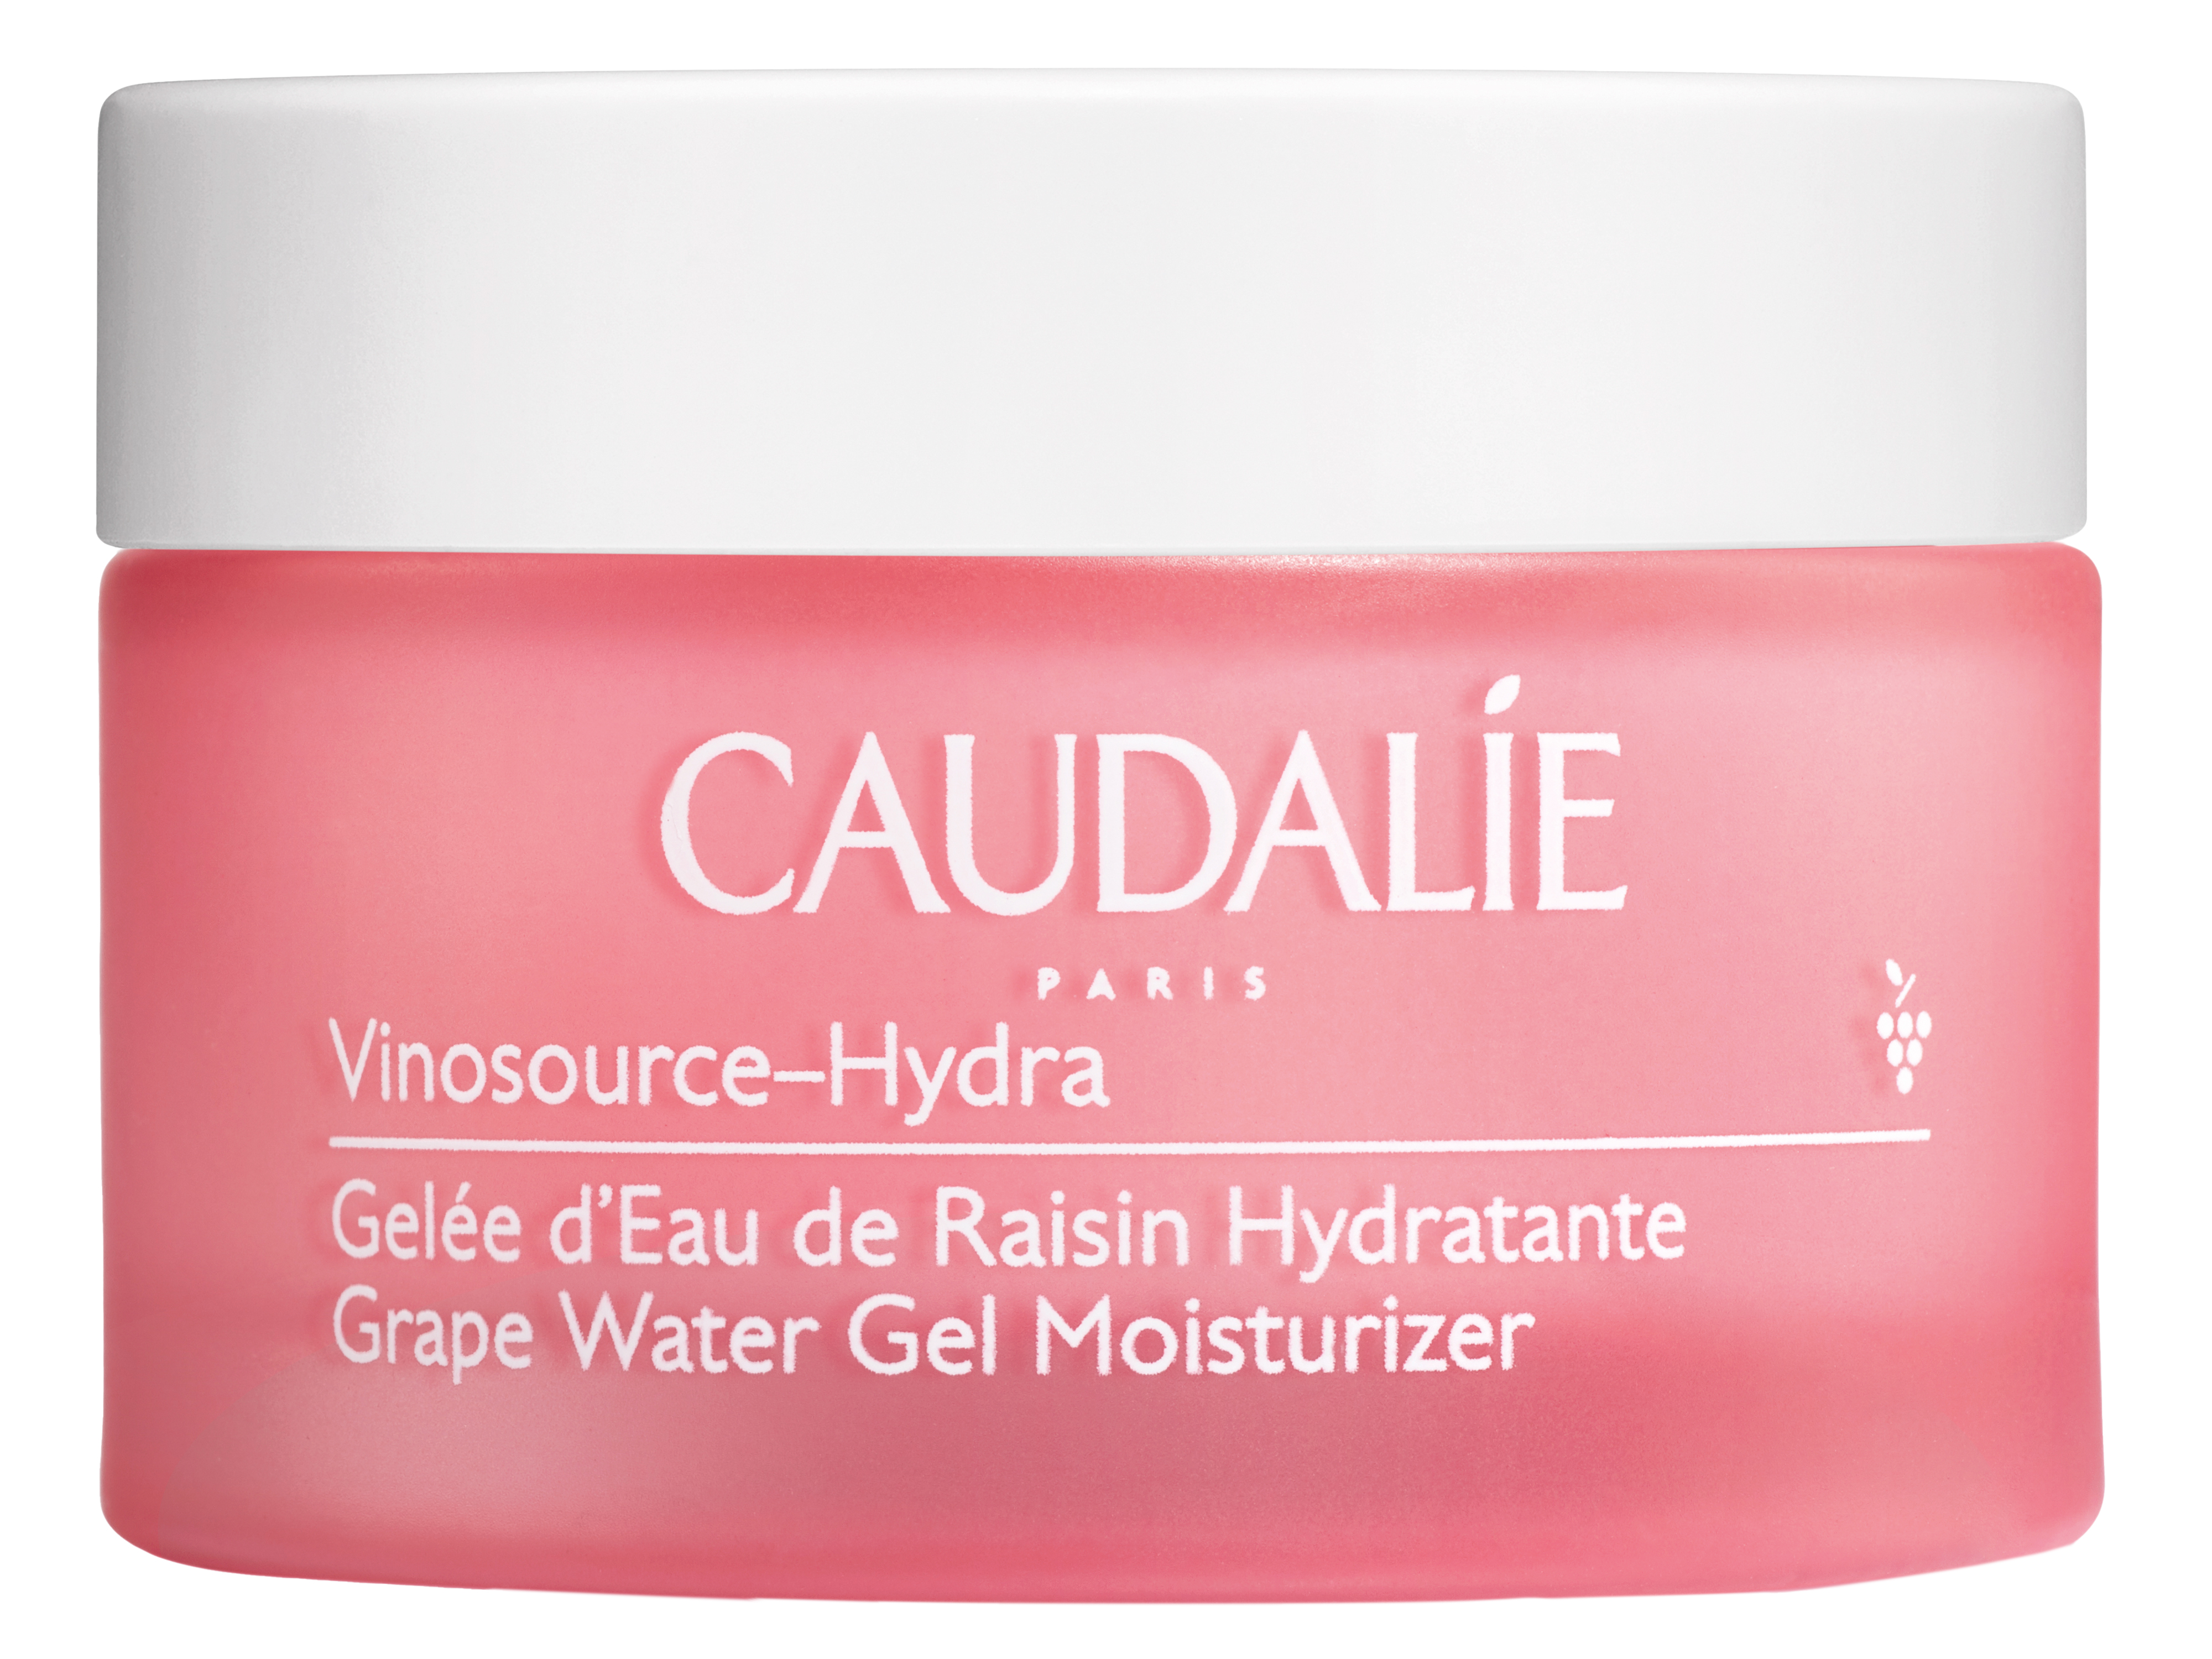 Caudalie Vinosource-Hydra Grape Water Gel Moisturizer, 50 ml